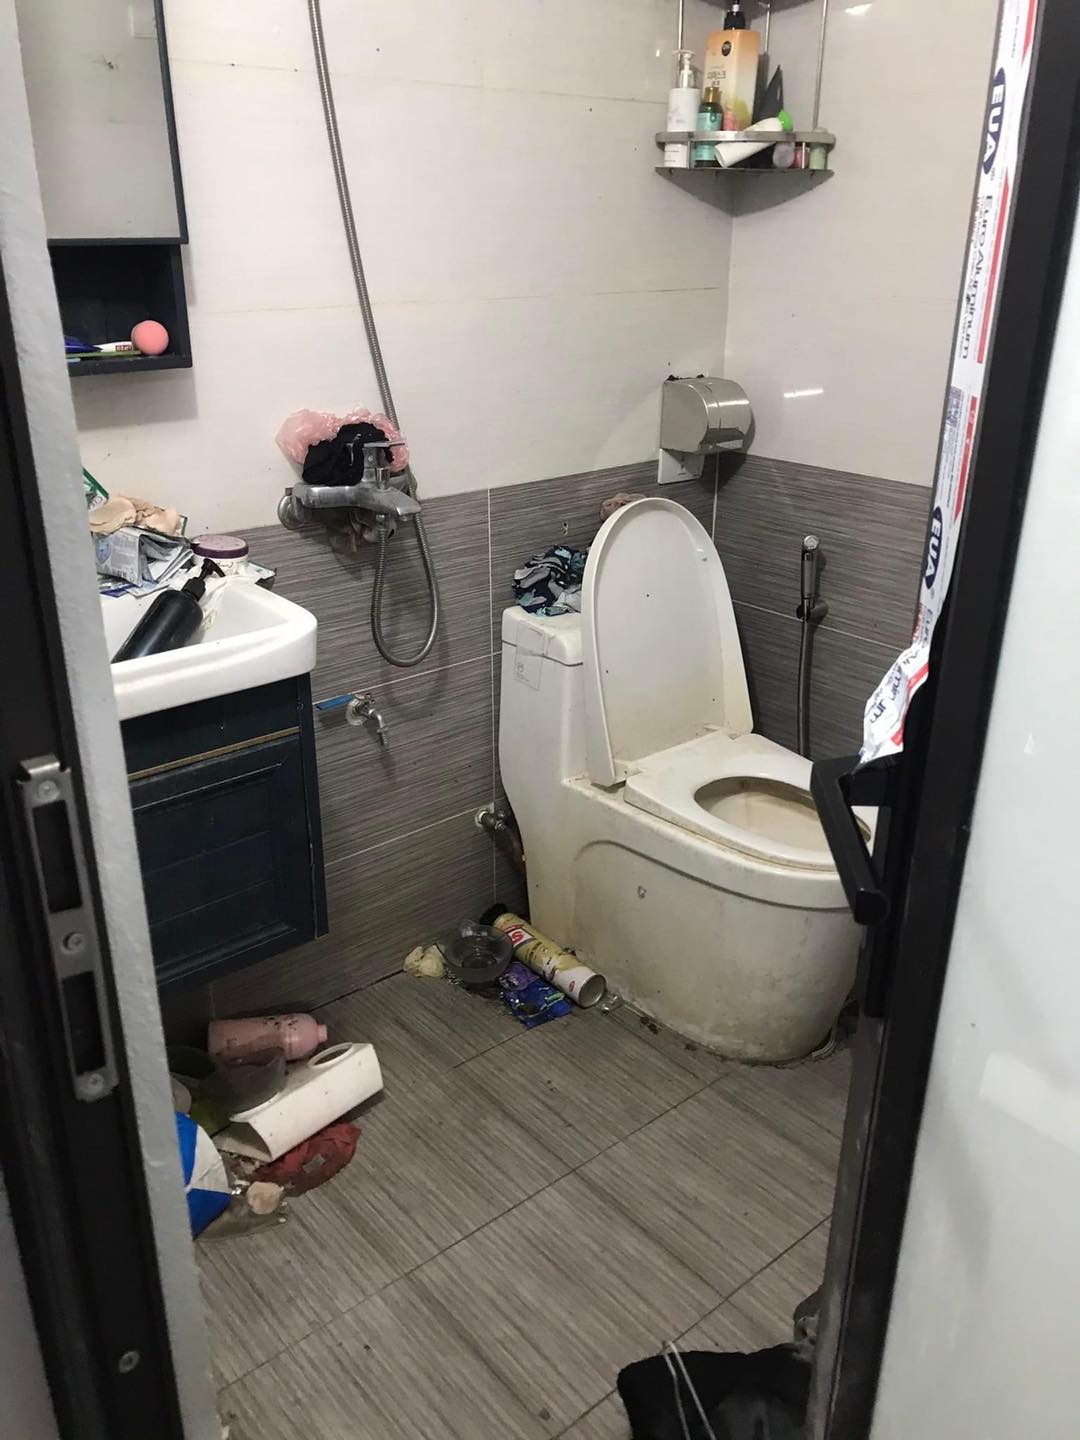 Kinh hoàng với căn phòng trọ của 2 nữ sinh Hà Nội: Rác thải chất ngập nhà, xem đến WC mà không chấp nhận được - Ảnh 5.